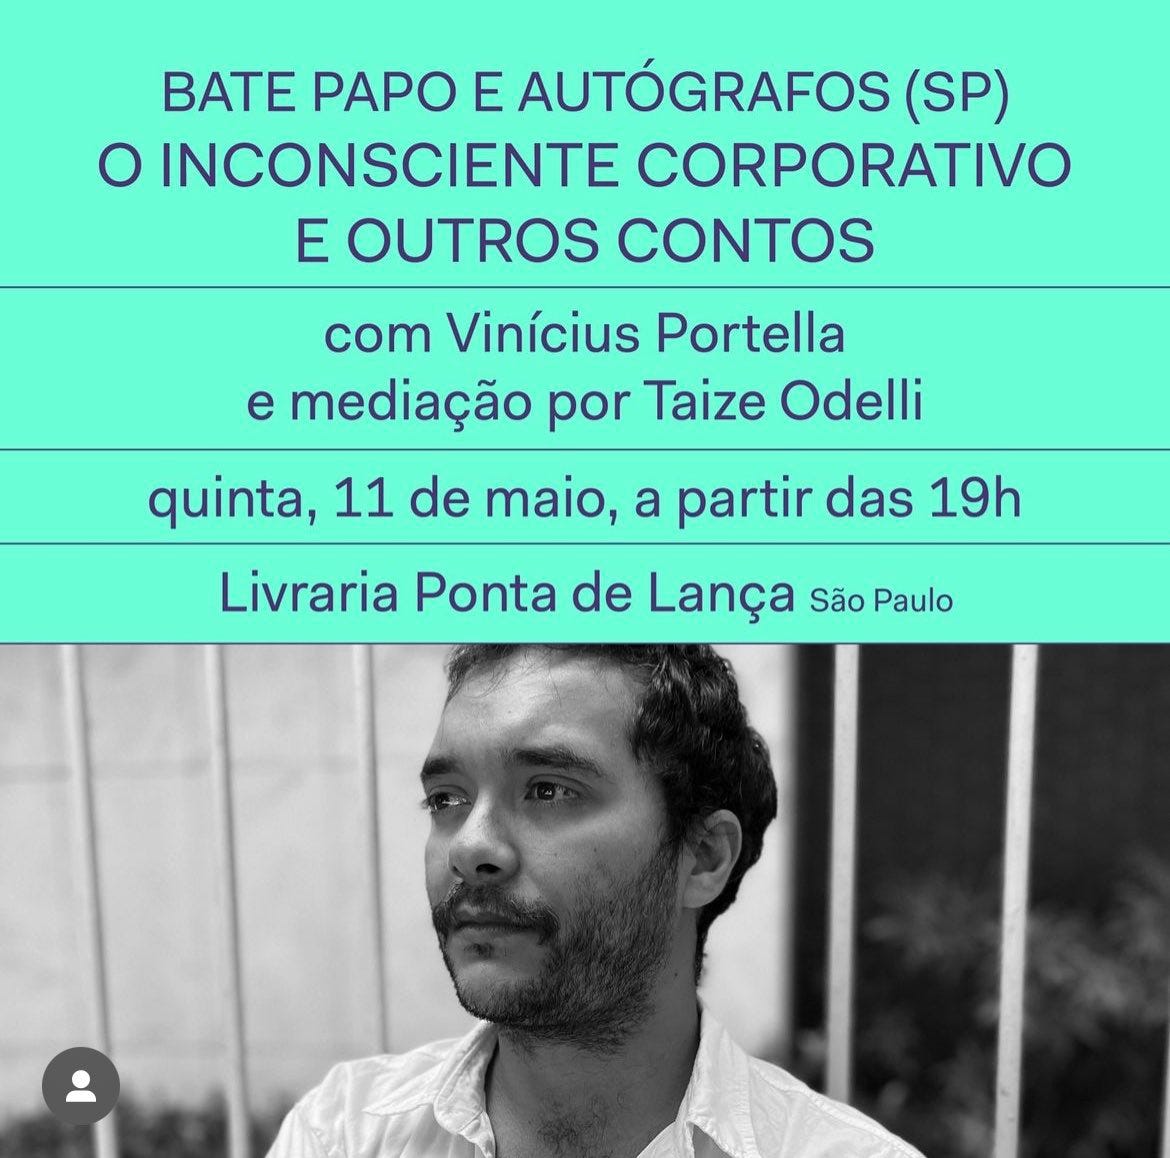 Convite para evento de lançamento de O inconsciente corporativo e outros contos, com foto do autor Vinicius Portella e dados do evento. Livraria Ponta de Lança, em São Paulo, as 19h no dia 11 de maio.